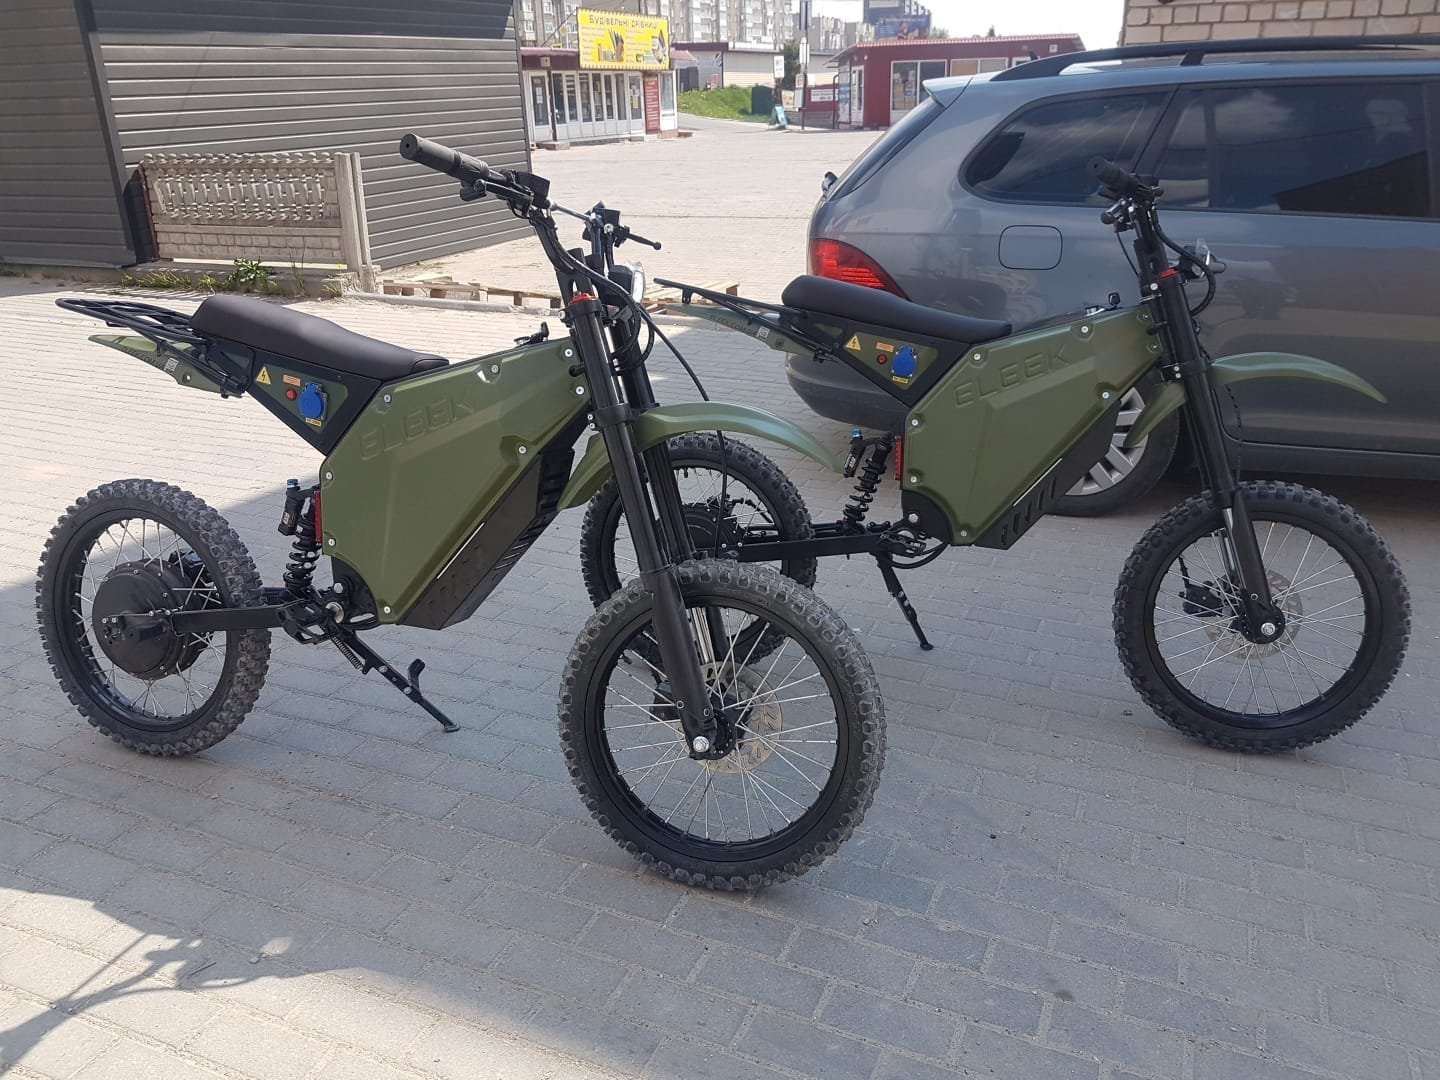 I militari ucraini usano le bici elettriche ELEEK Atom nella parte anteriore